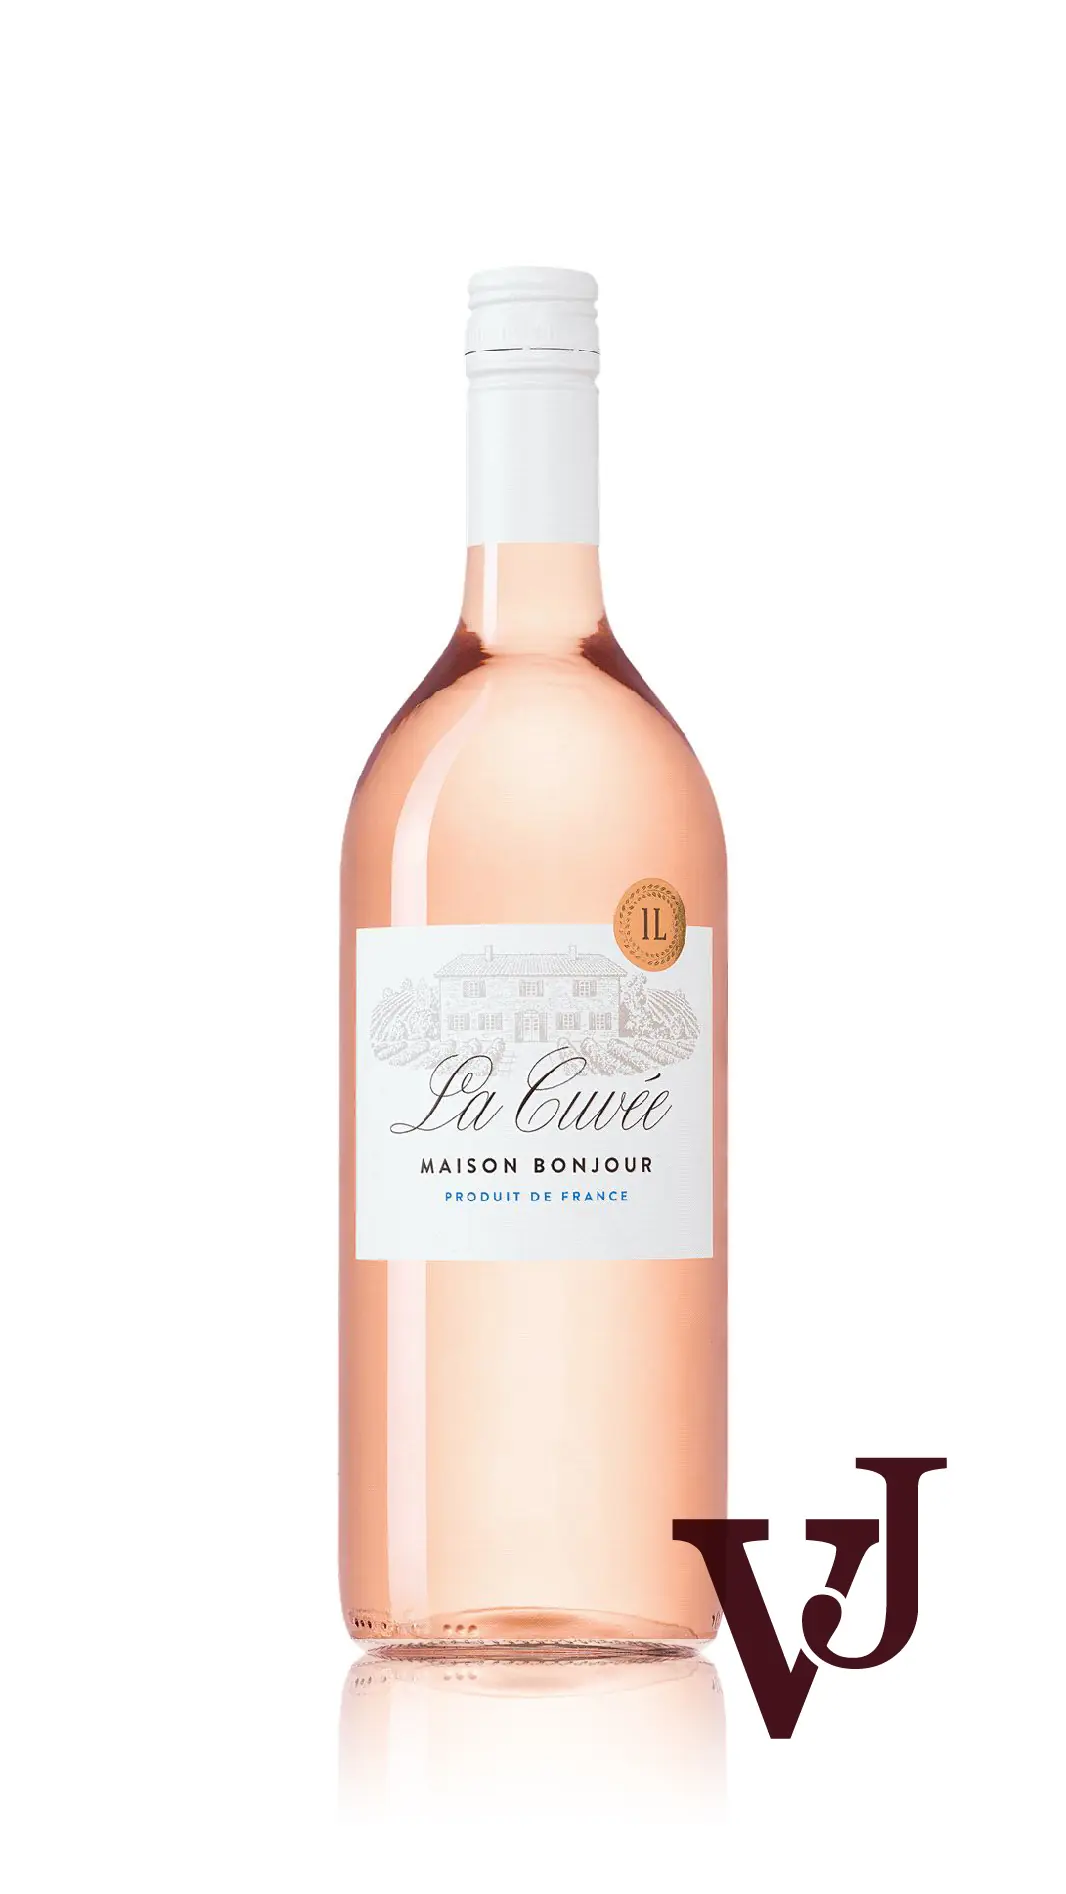 Rosé Vin - La Cuvée Maison Bonjour Rosé artikel nummer 7397801 från producenten Vins Biecher från området Frankrike. - Vinjournalen.se